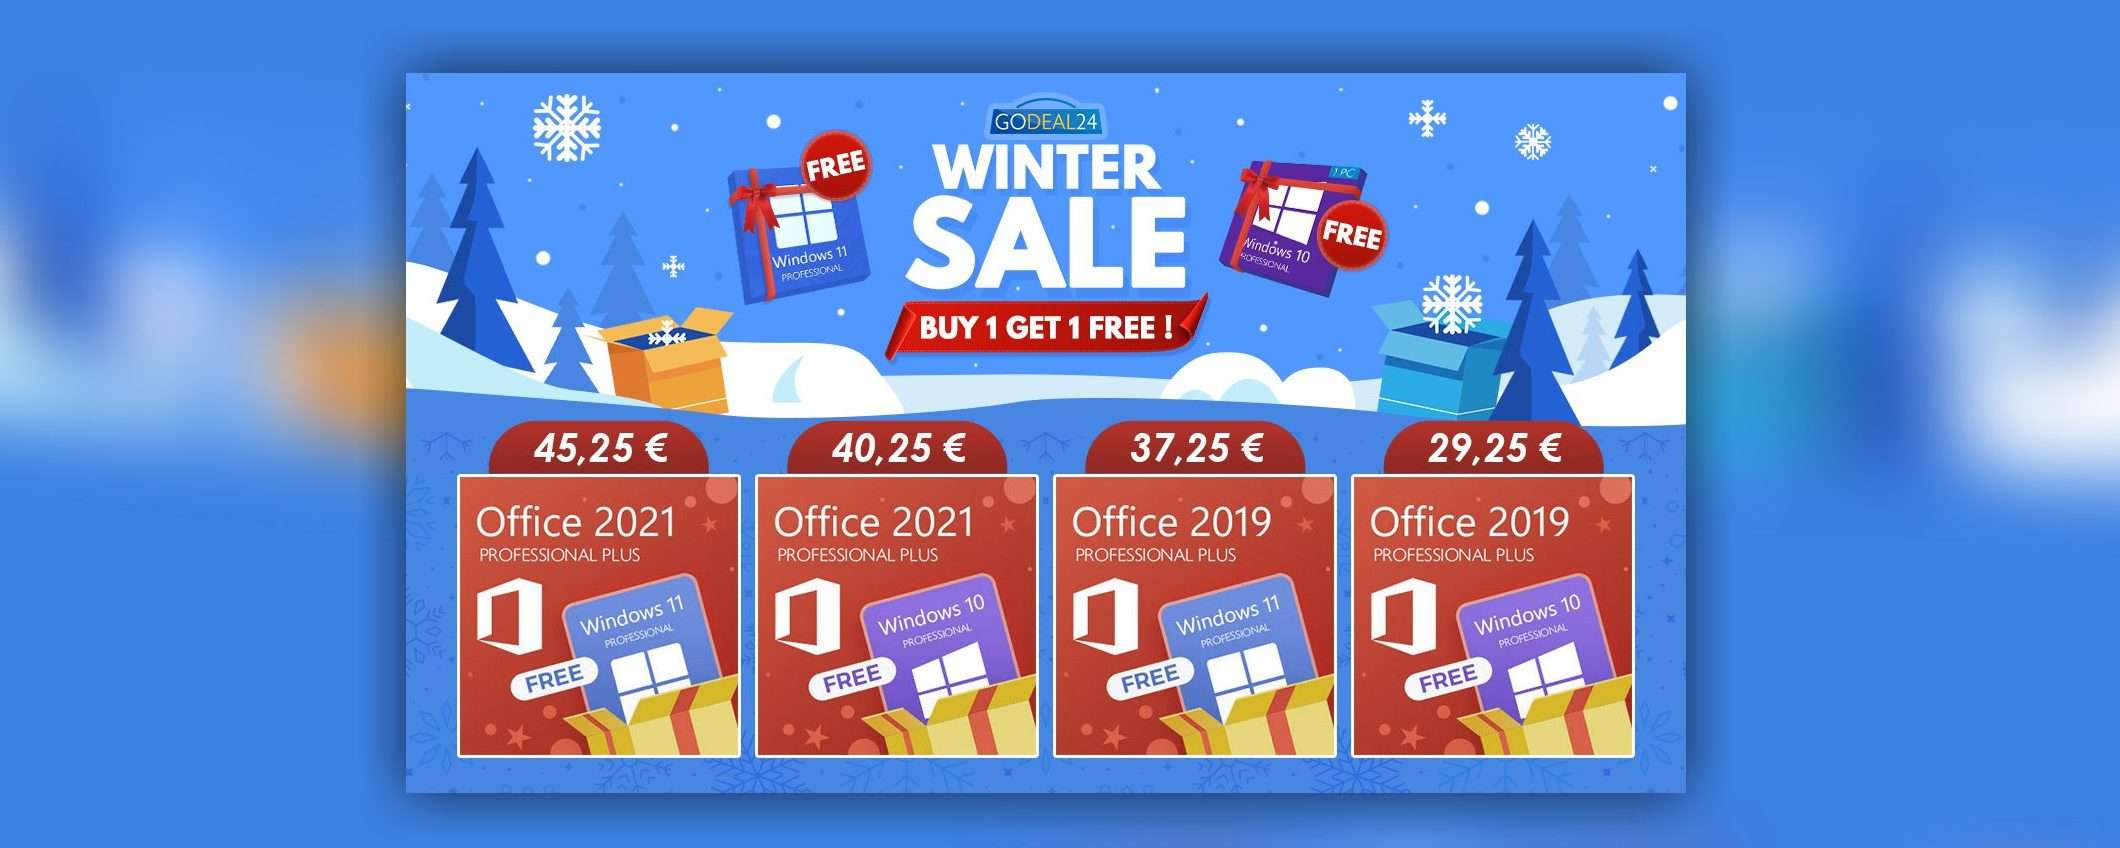 Saldi invernali GoDeal24 in arrivo, Windows 11 a 0€? Incredibile!